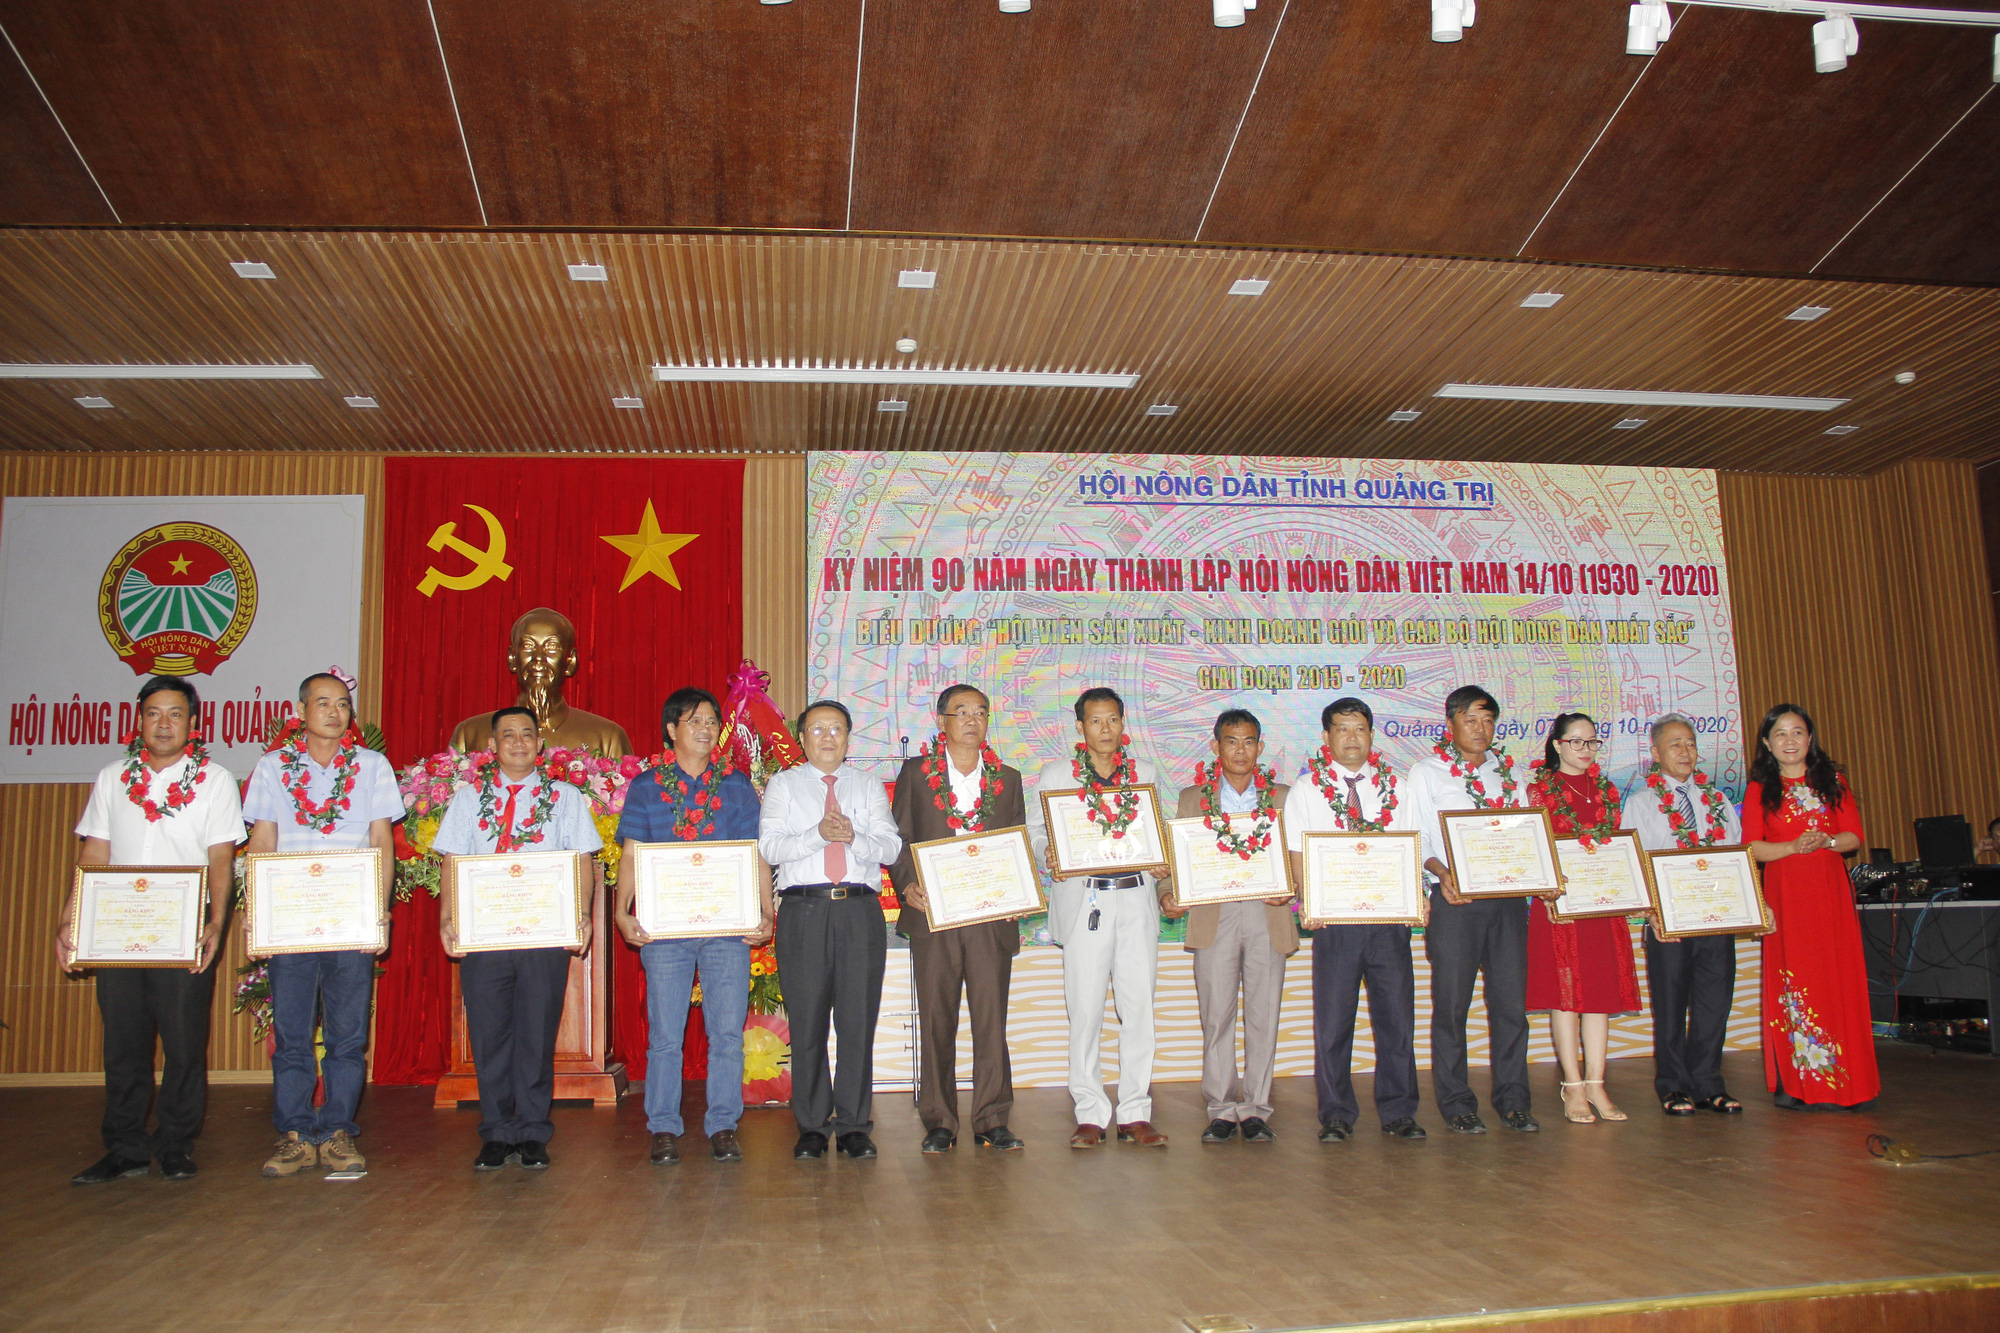 Hội Nông dân tỉnh Quảng Trị đóng góp gì cho sự phát triển của xã hội - Ảnh 2.